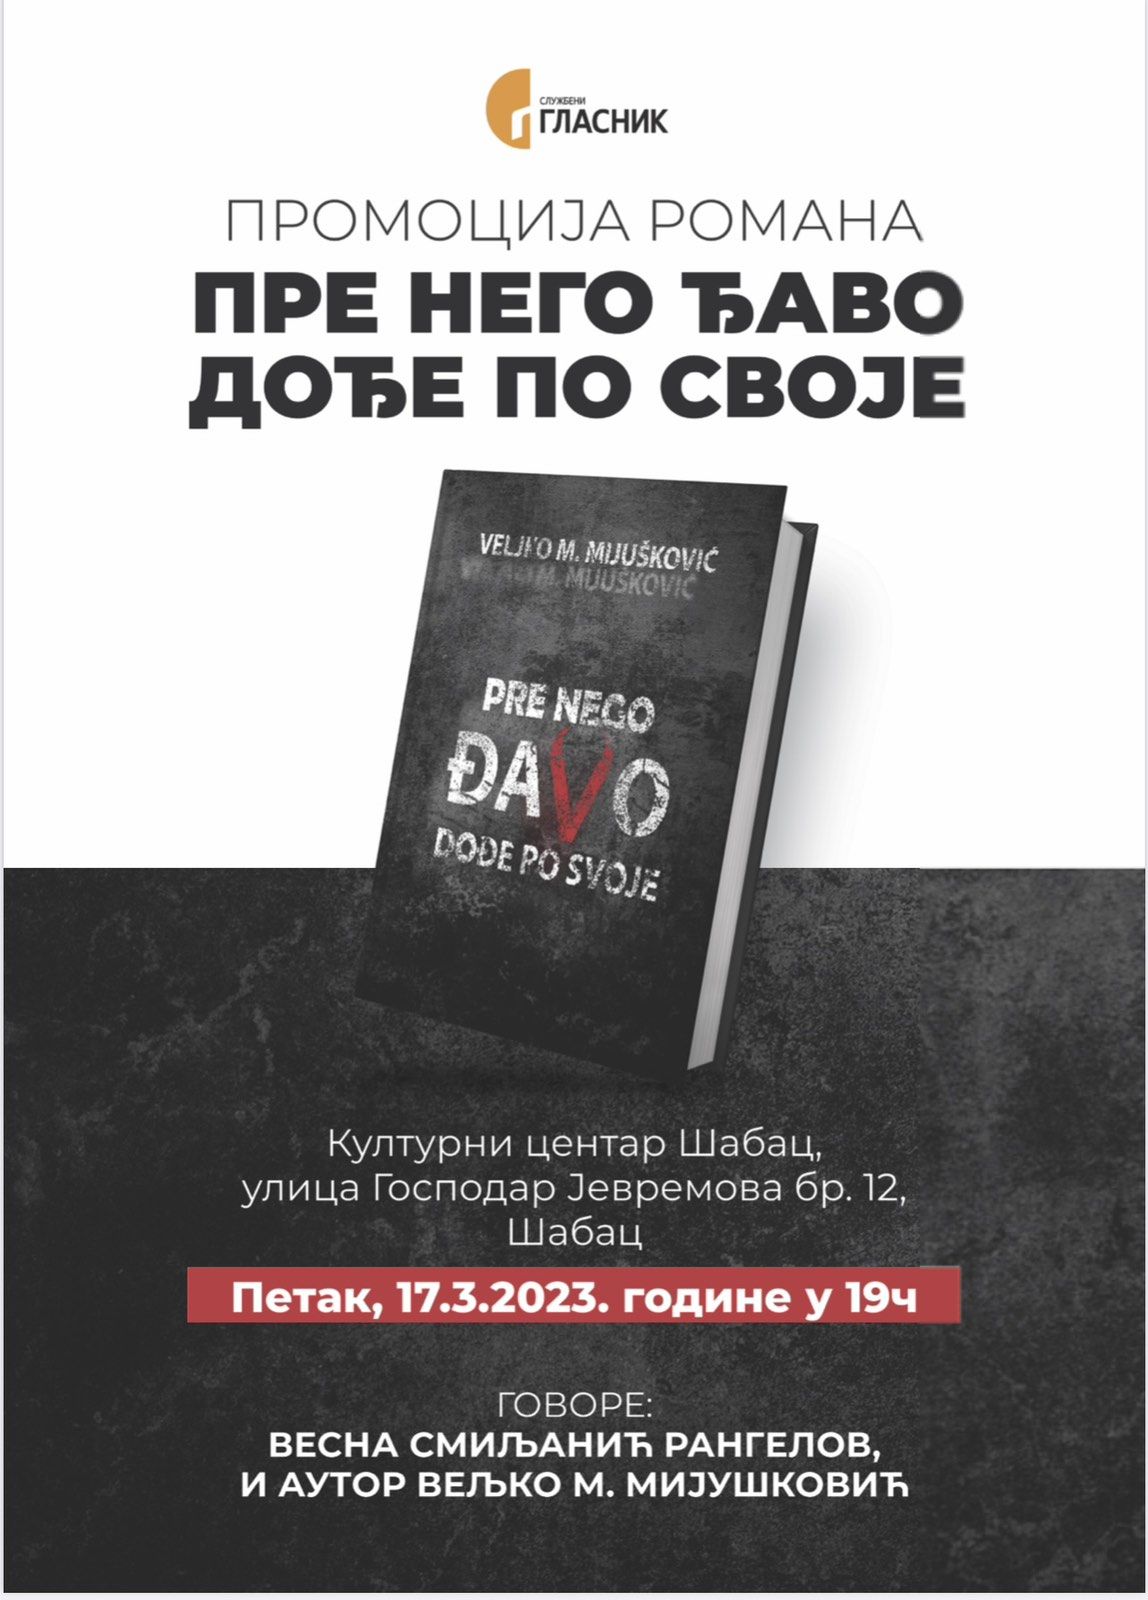 Promocija knjige "Pre nego đavo dođe po svoje"